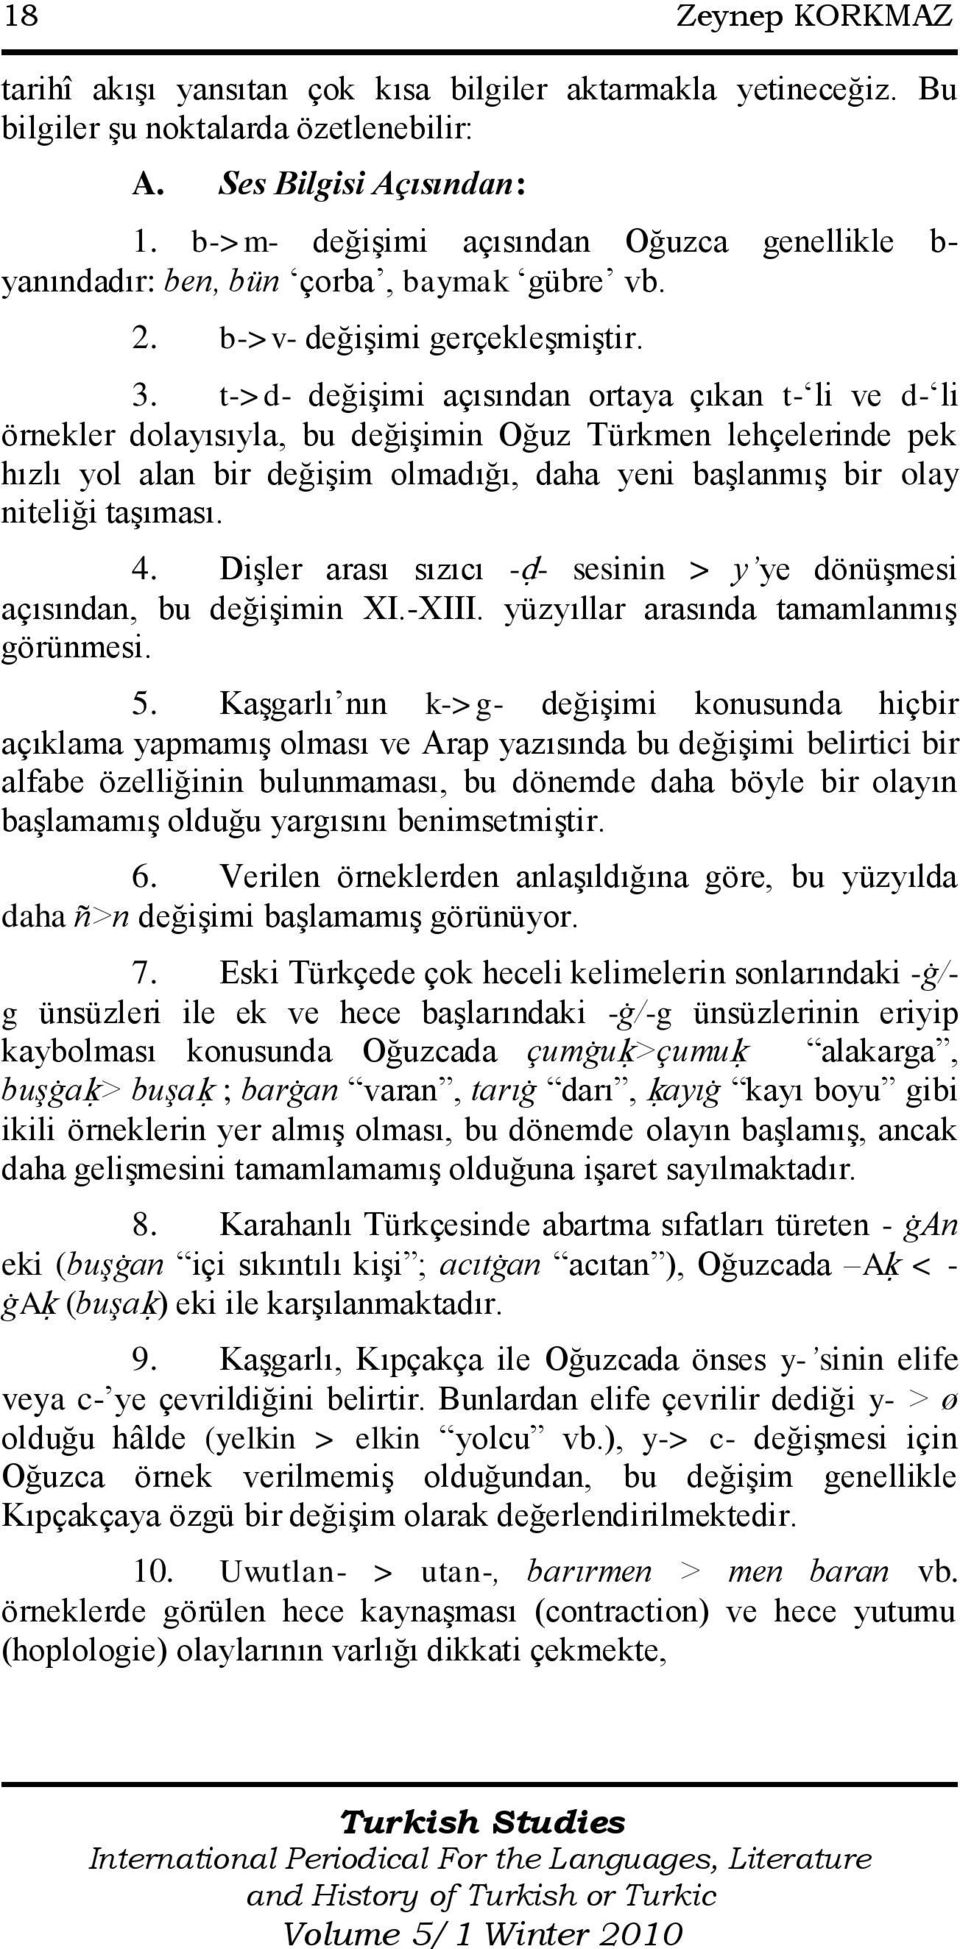 t->d- değiģimi açısından ortaya çıkan t- li ve d- li örnekler dolayısıyla, bu değiģimin Oğuz Türkmen lehçelerinde pek hızlı yol alan bir değiģim olmadığı, daha yeni baģlanmıģ bir olay niteliği